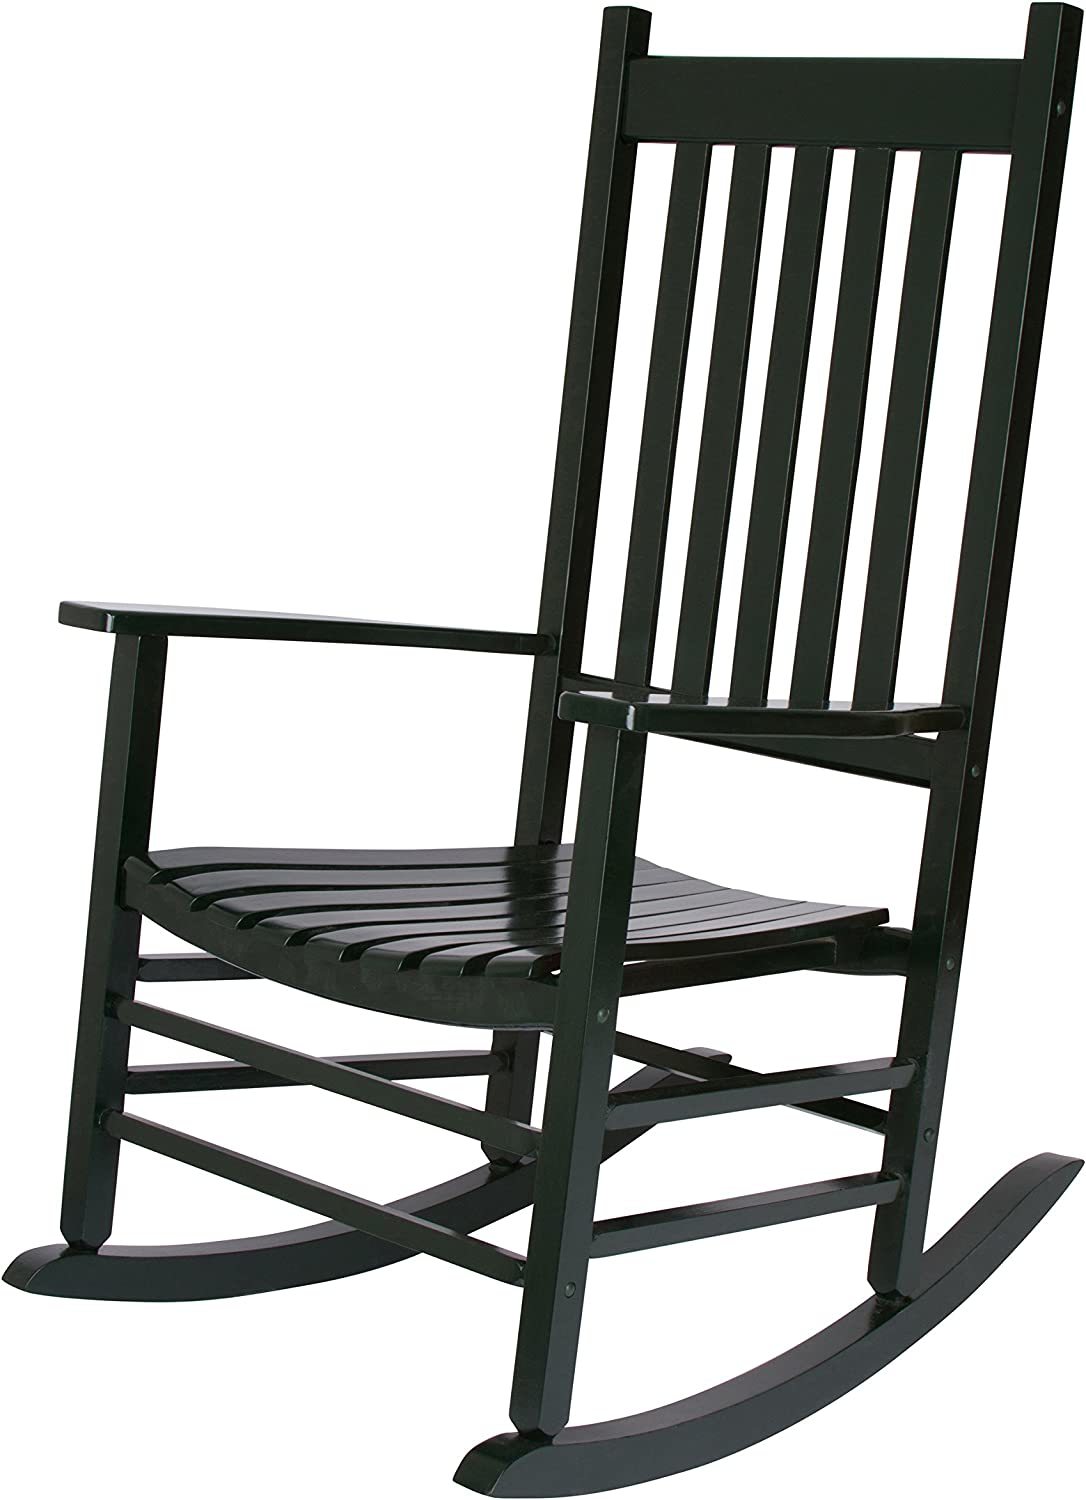 Vermont Rocking Chair, Dark Green, Shine Company 4332Dg. - $175.93